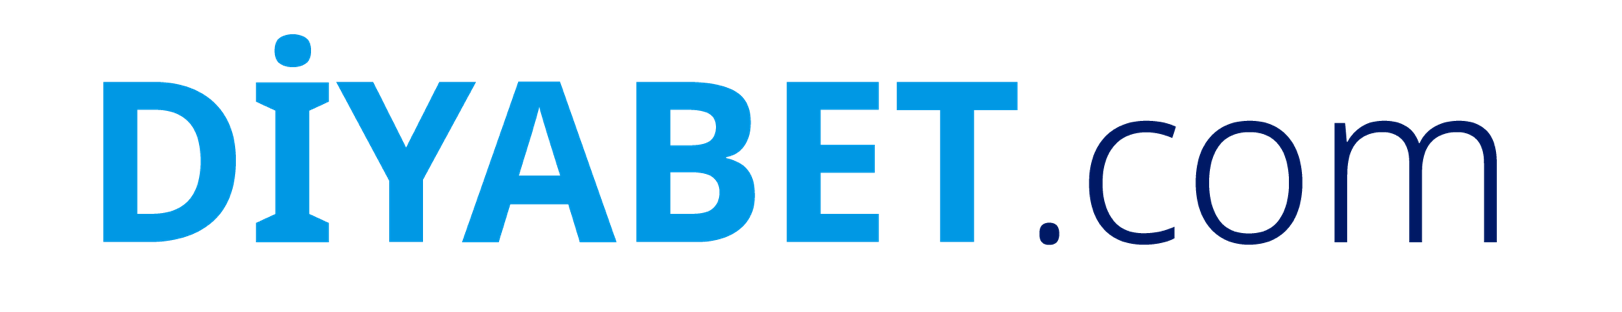 Diyabet.com logo